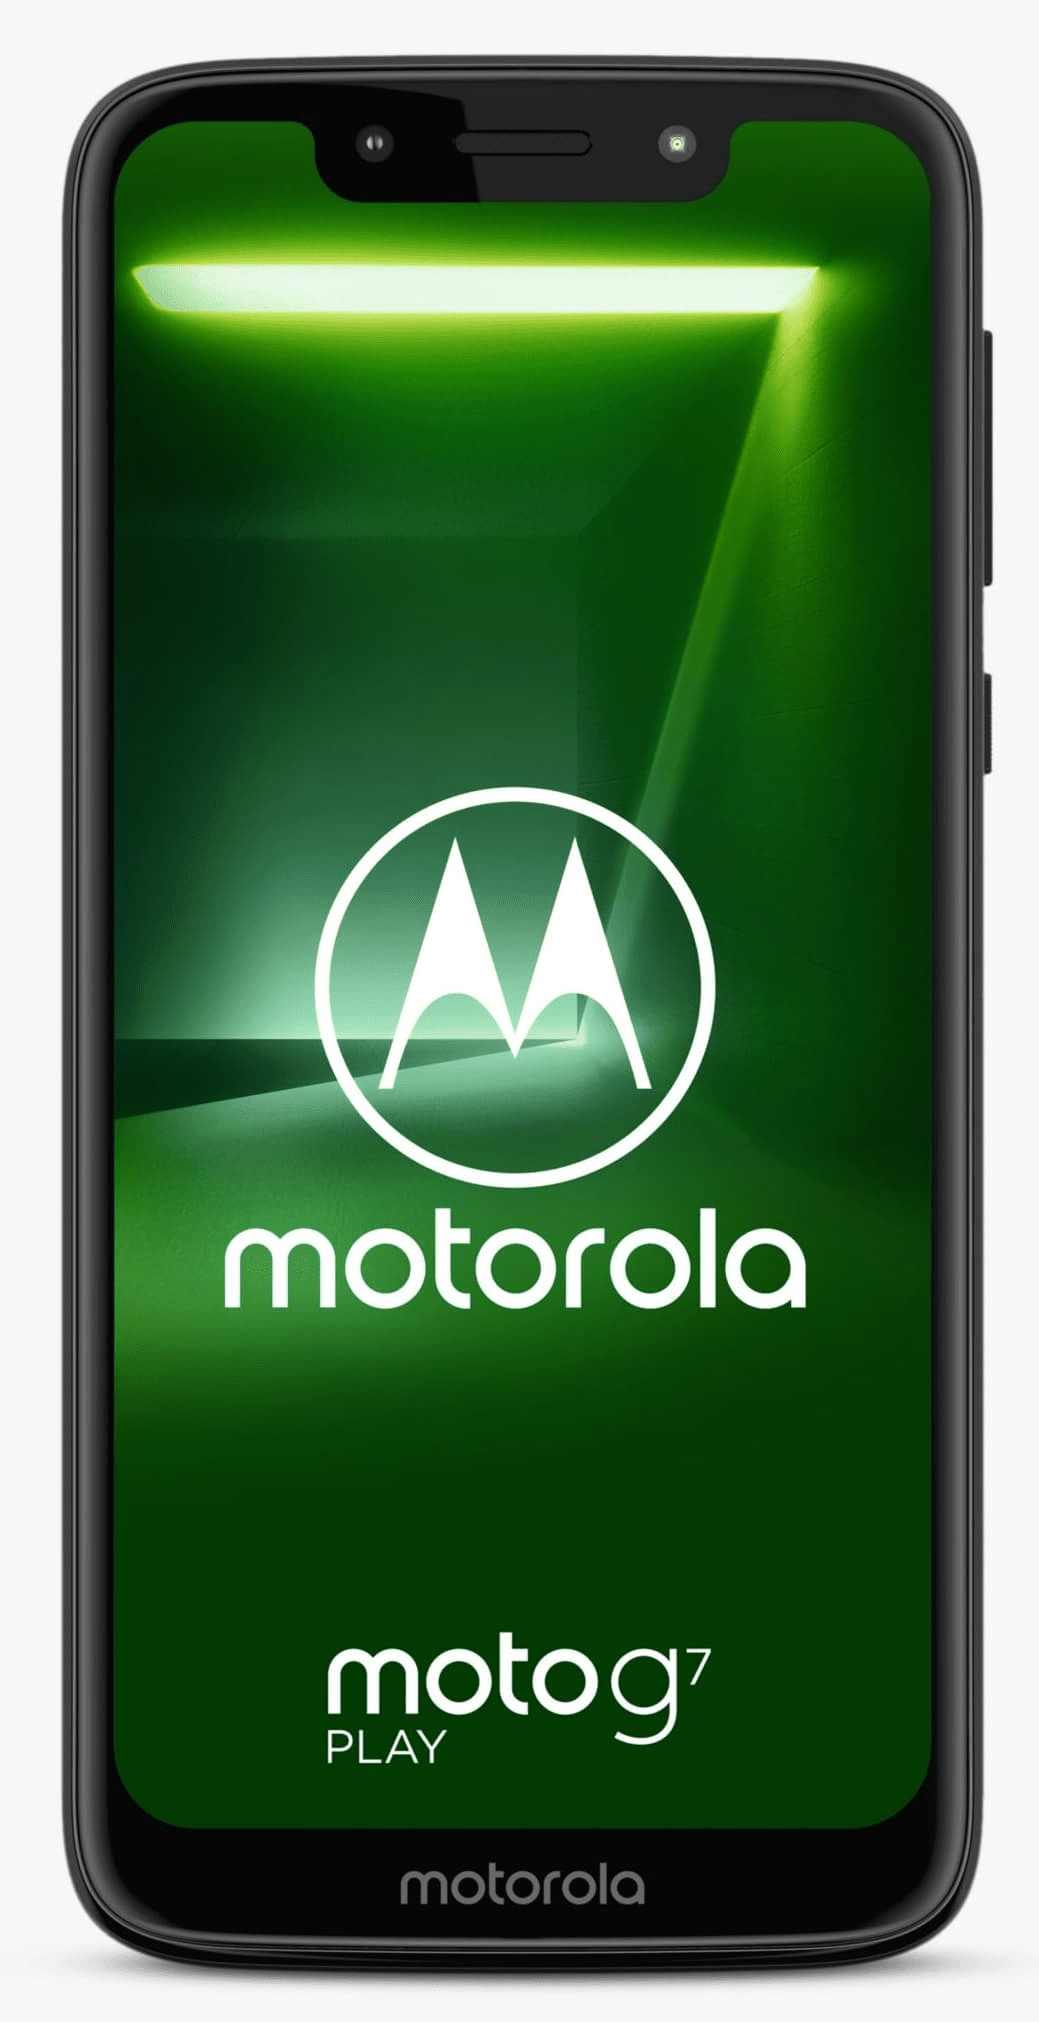 Moto G7 Play